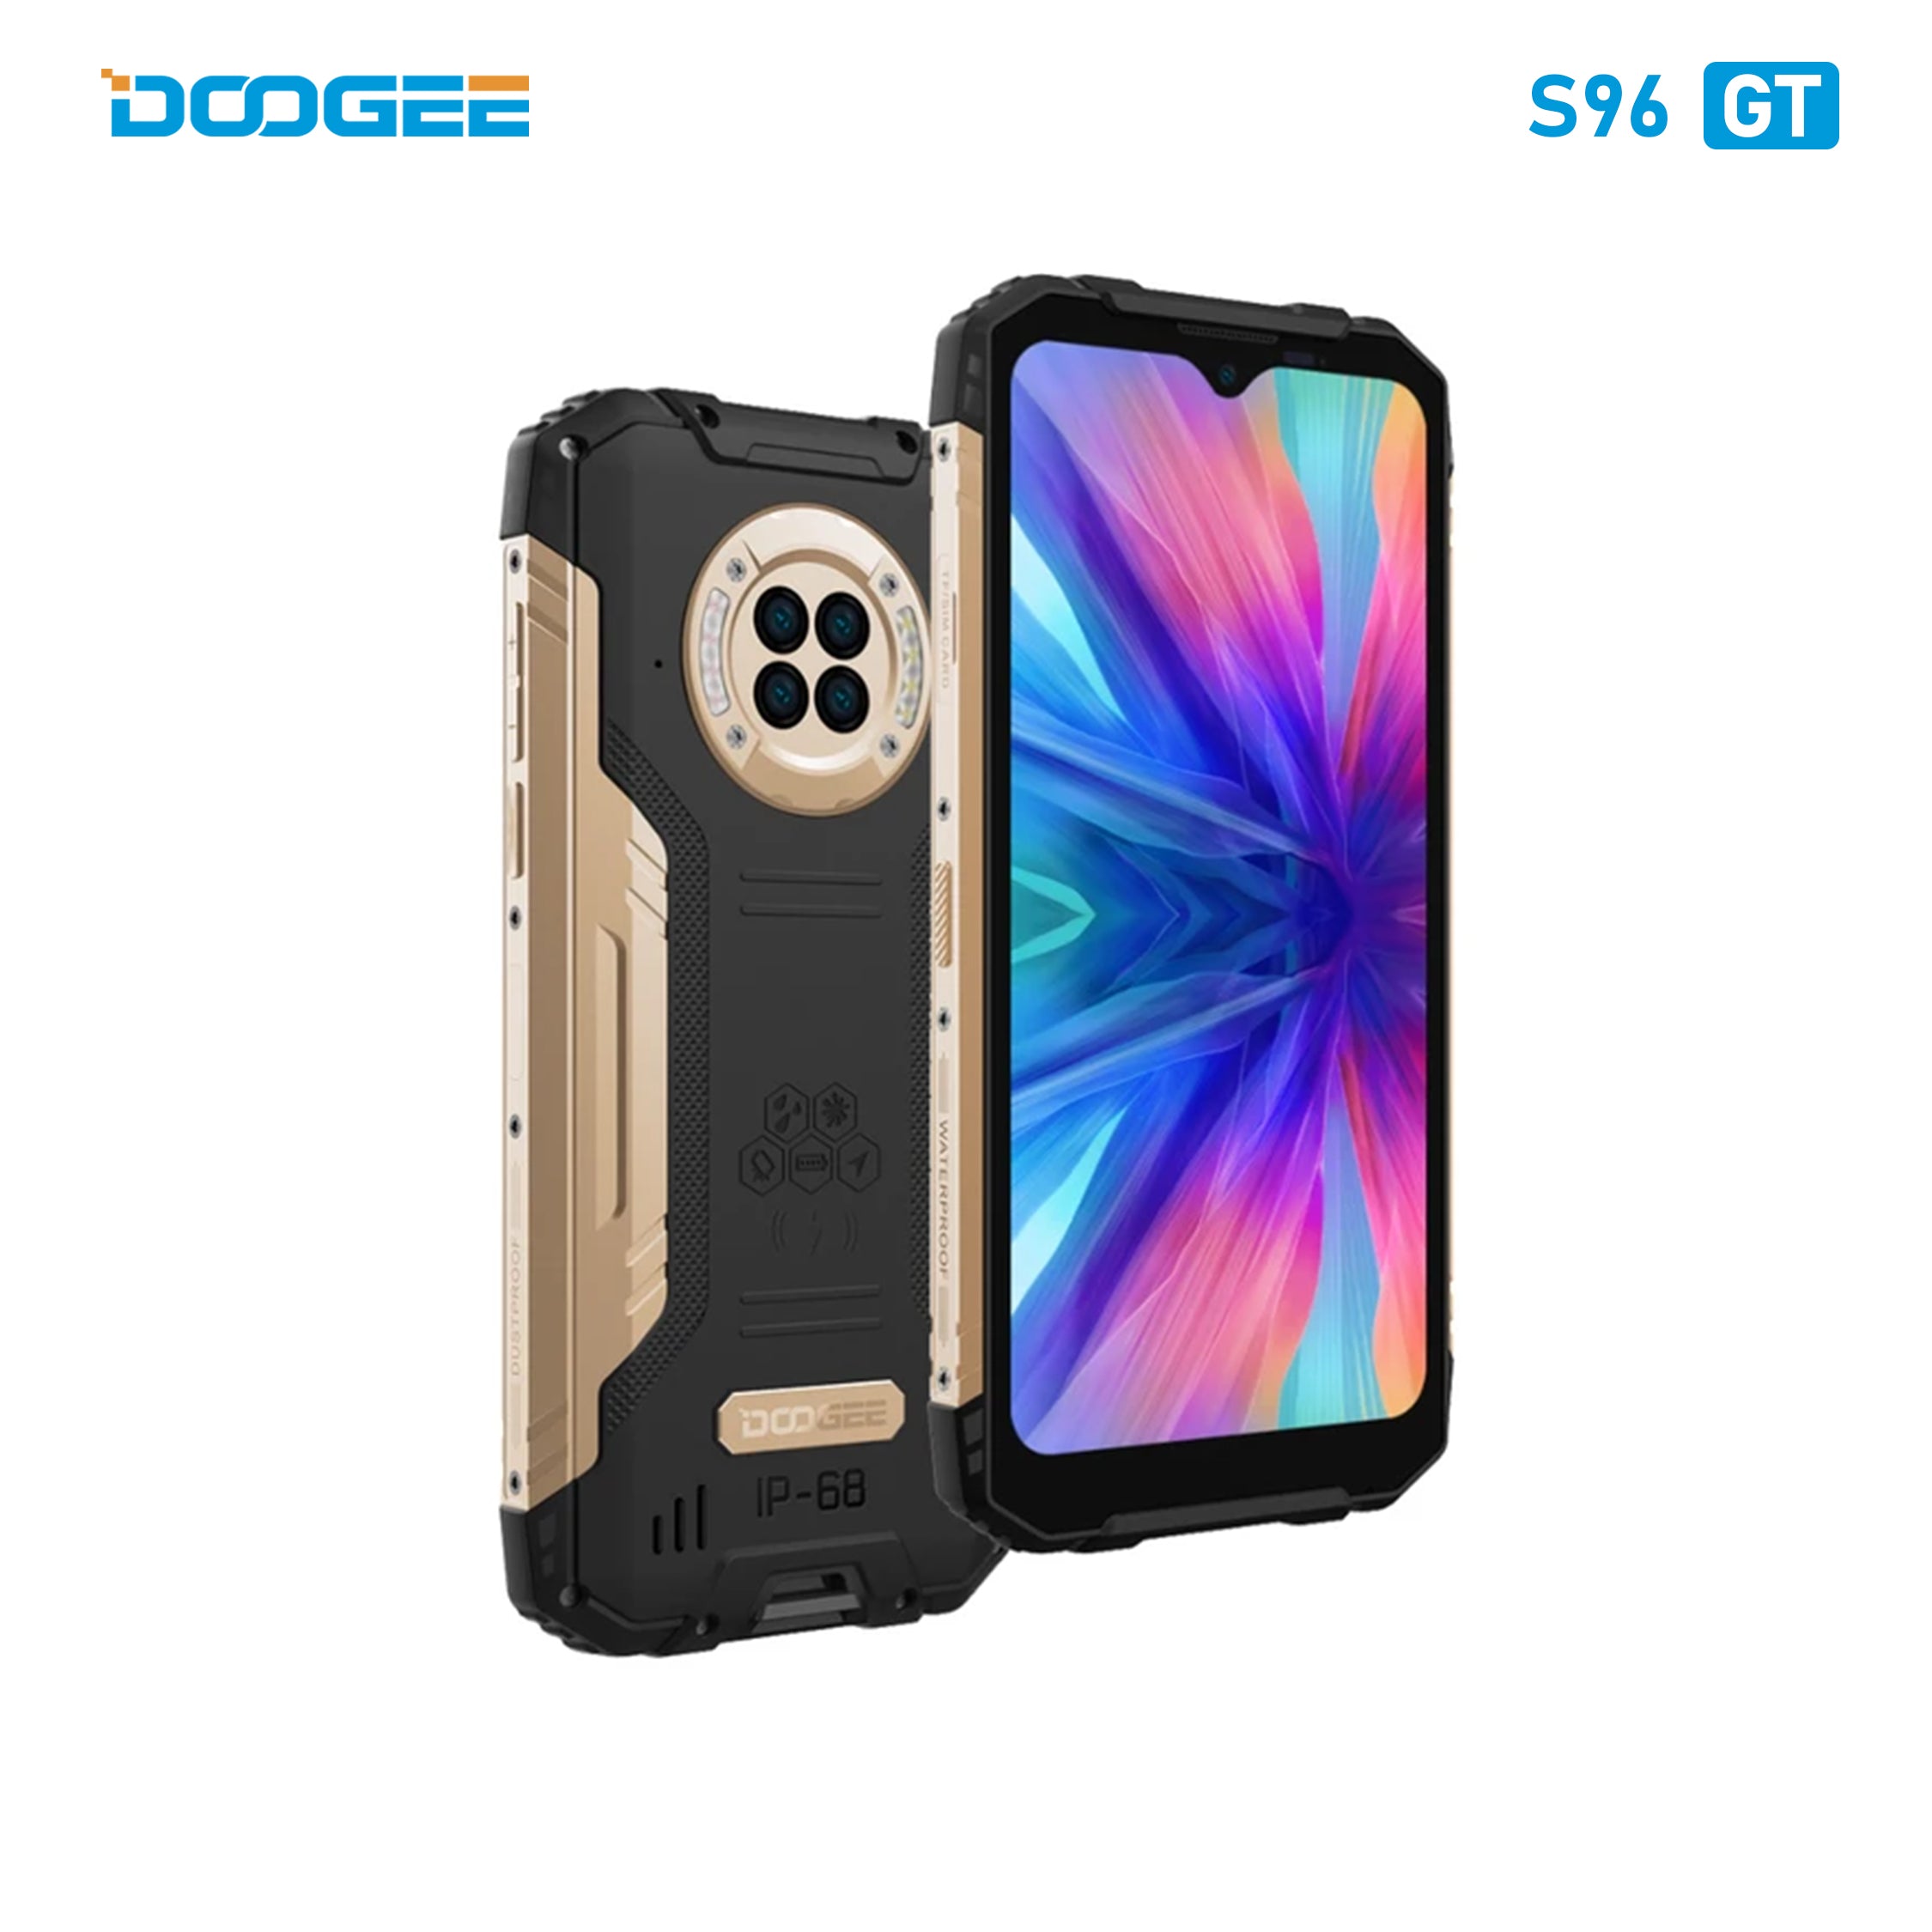 Doogee Rugged Smartphone S96GT